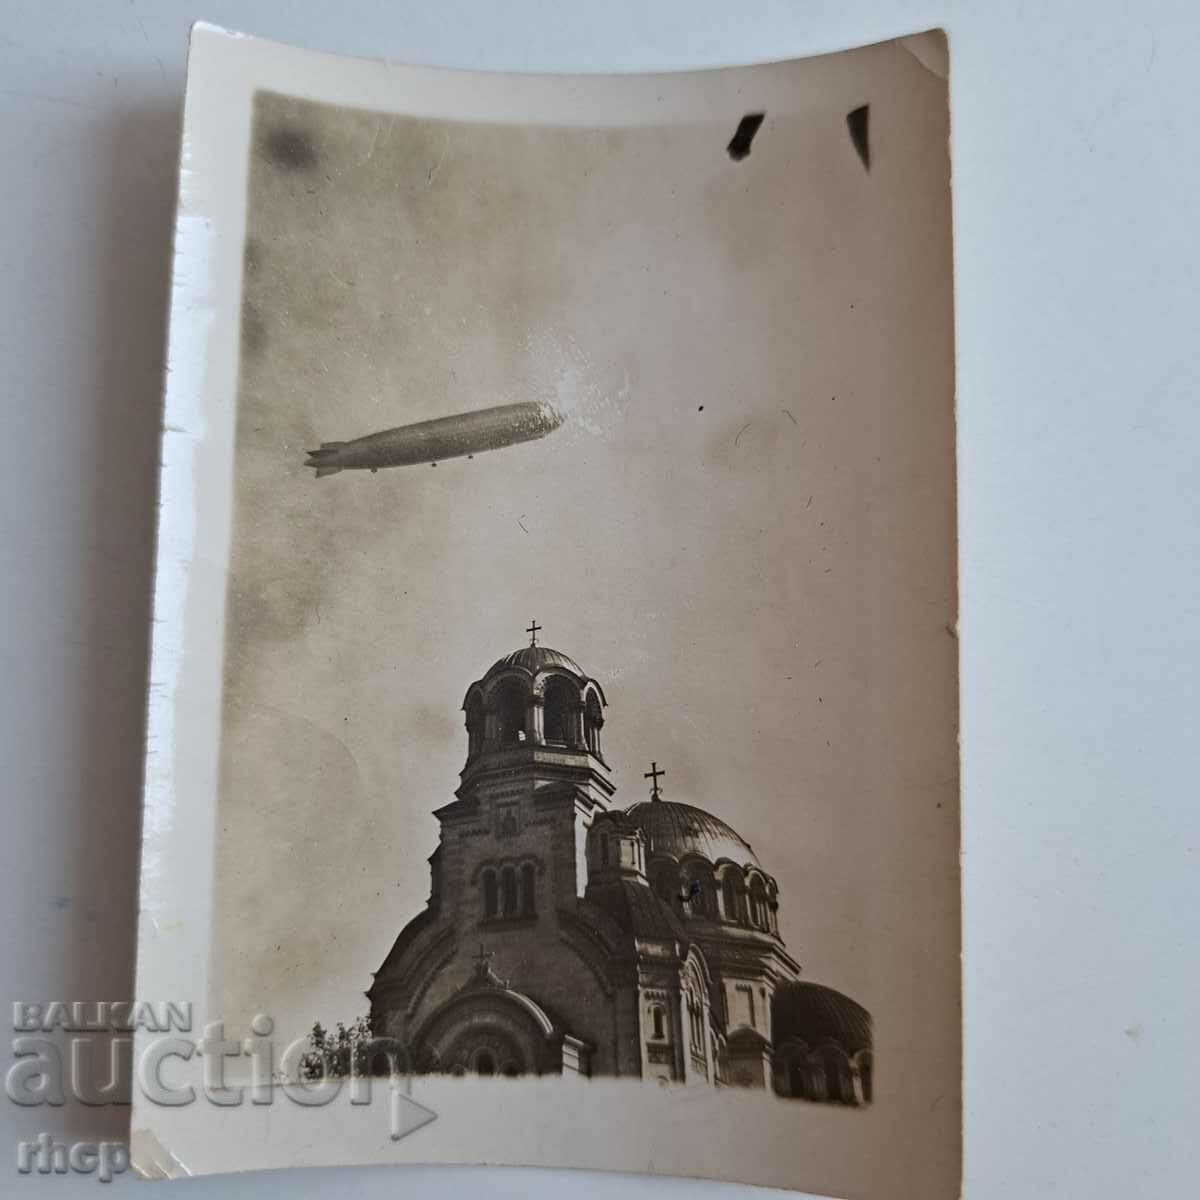 Παλιά φωτογραφία Zeppelin πάνω από τη Σόφια του 1929